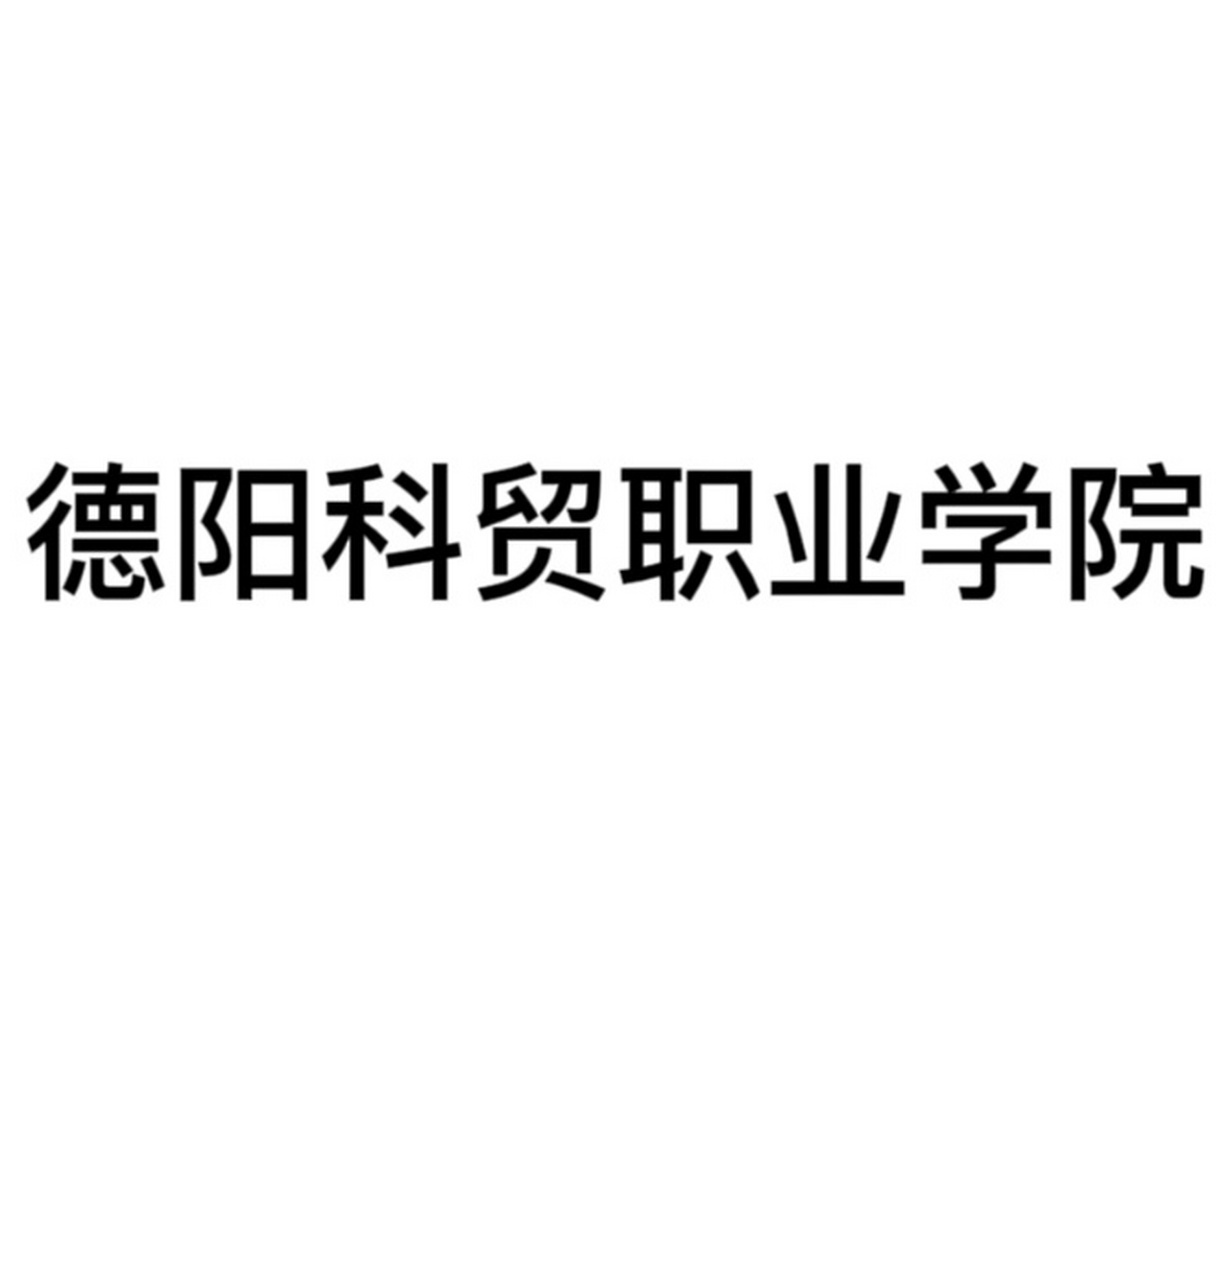 德阳科贸职业学院logo图片